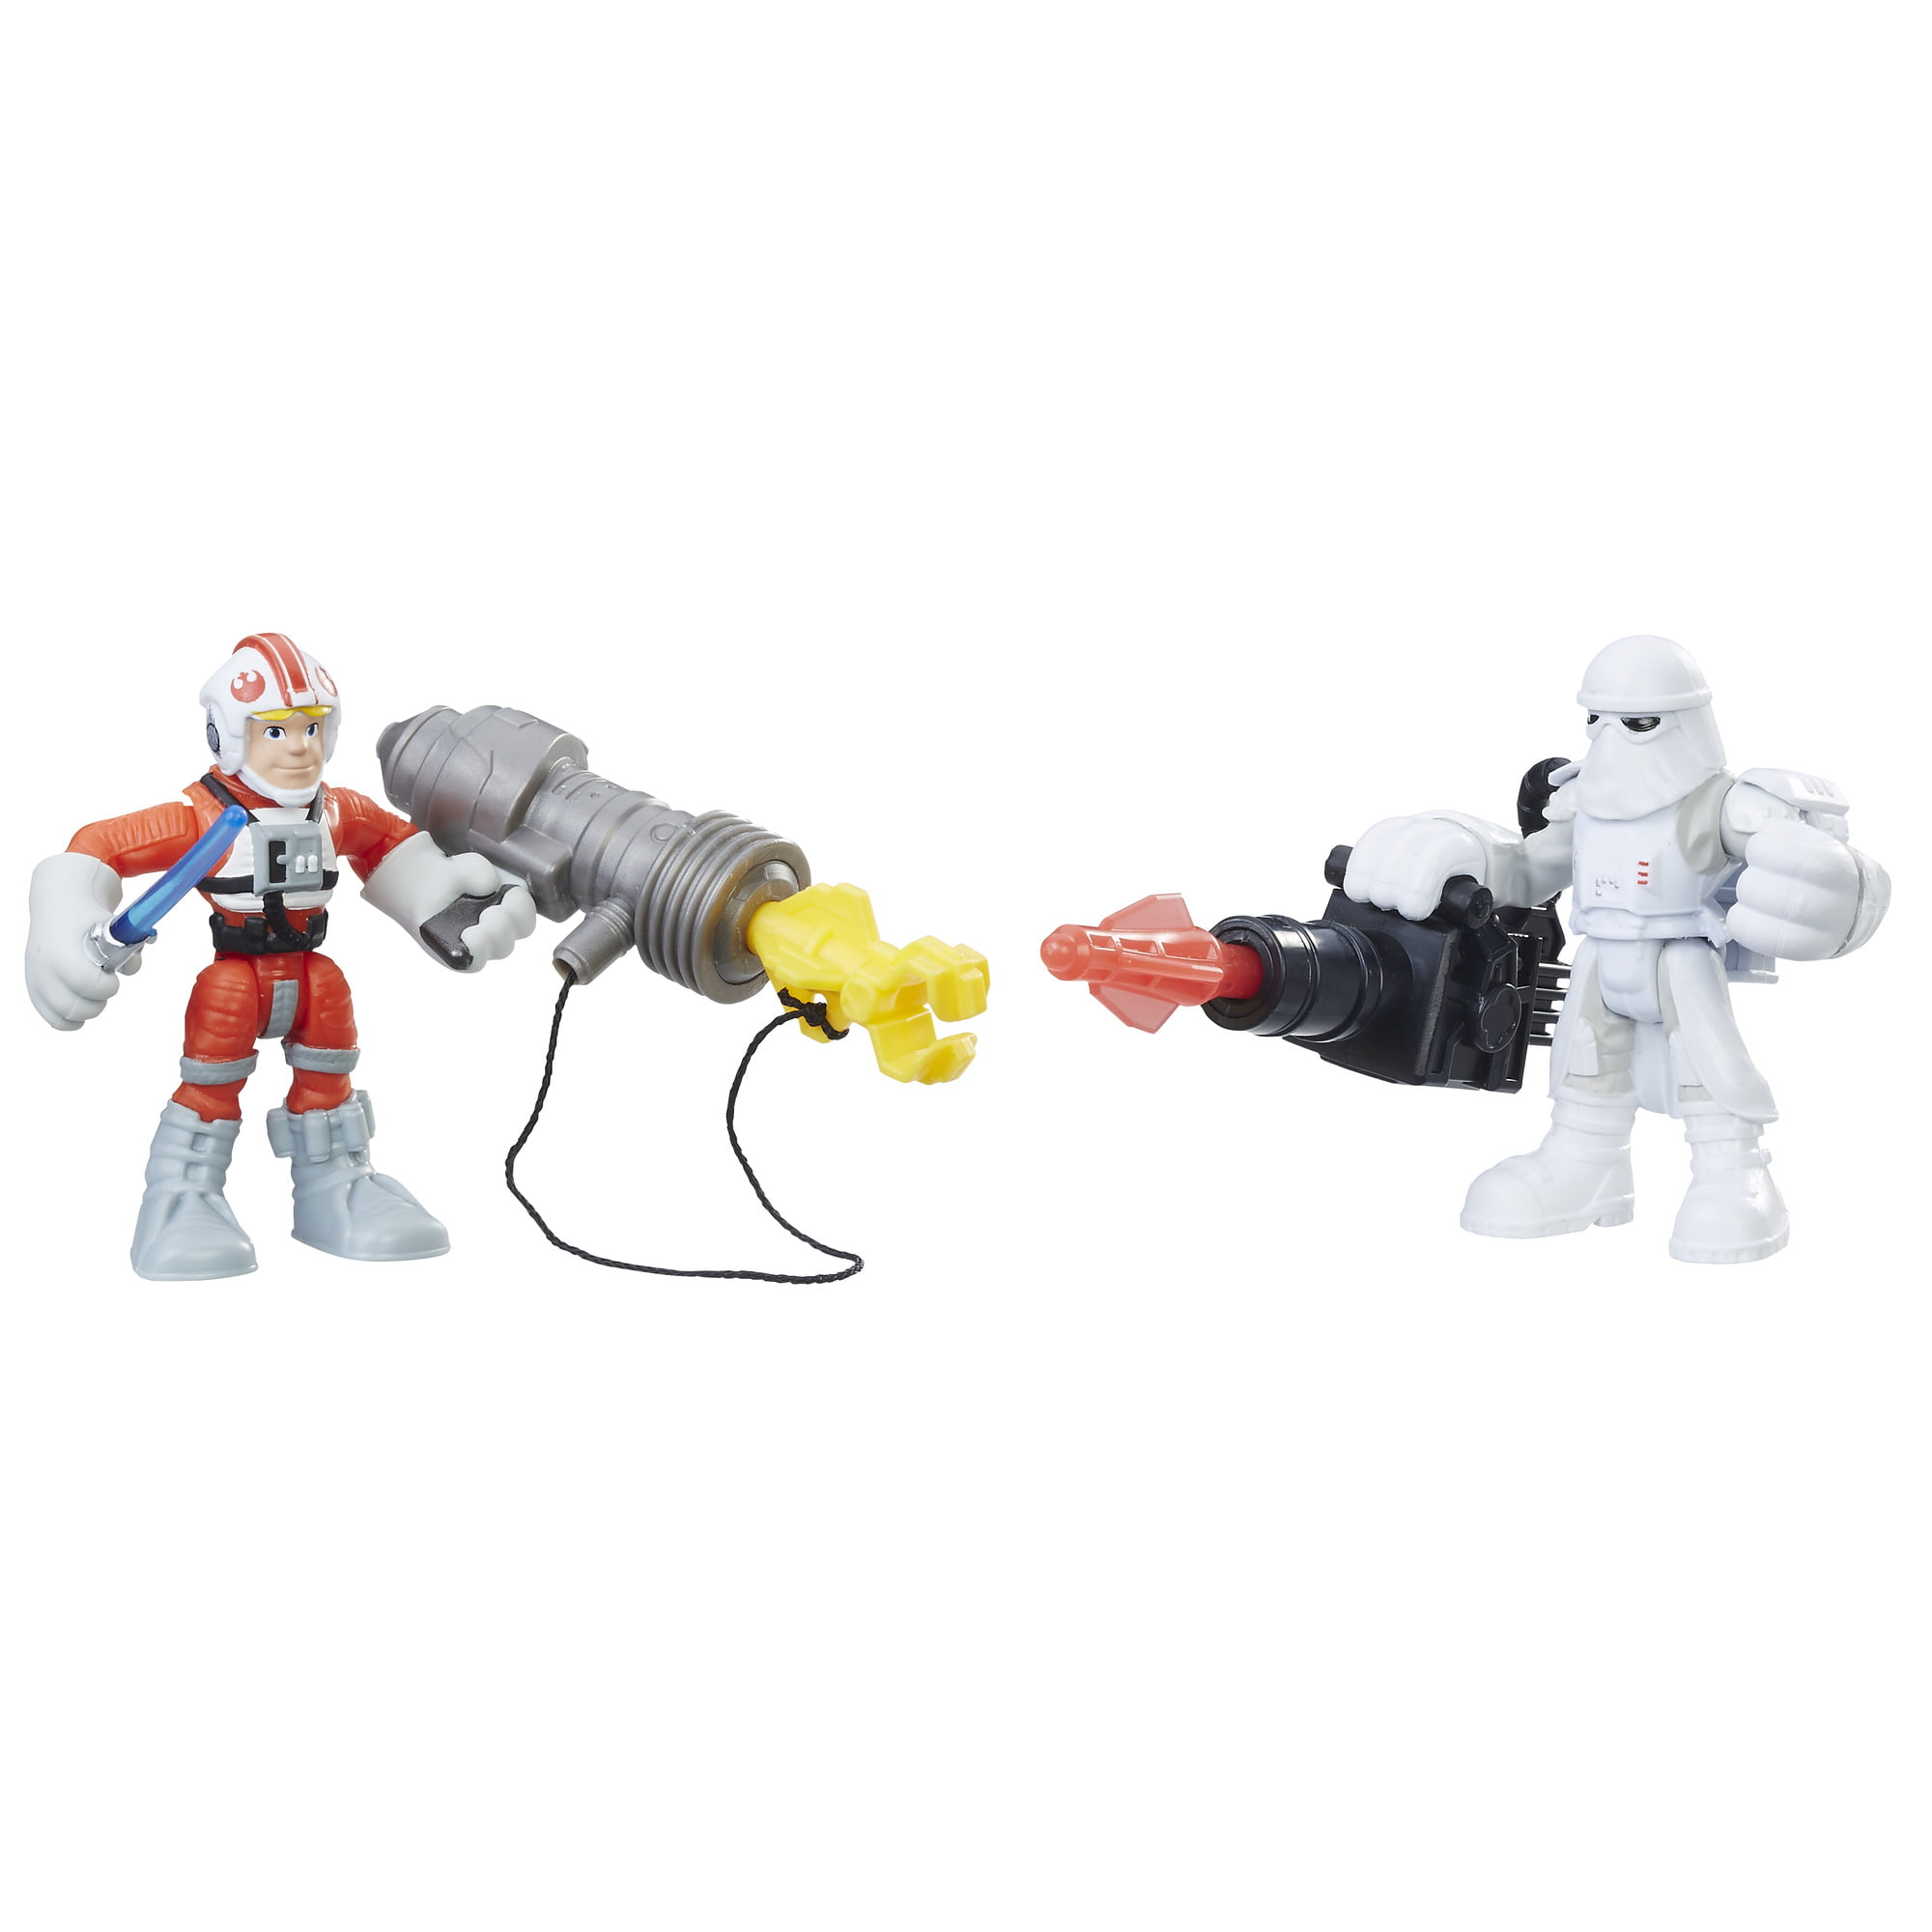 Playskool Star Wars Galactic Heroes Flame Trooper First Order Figure 